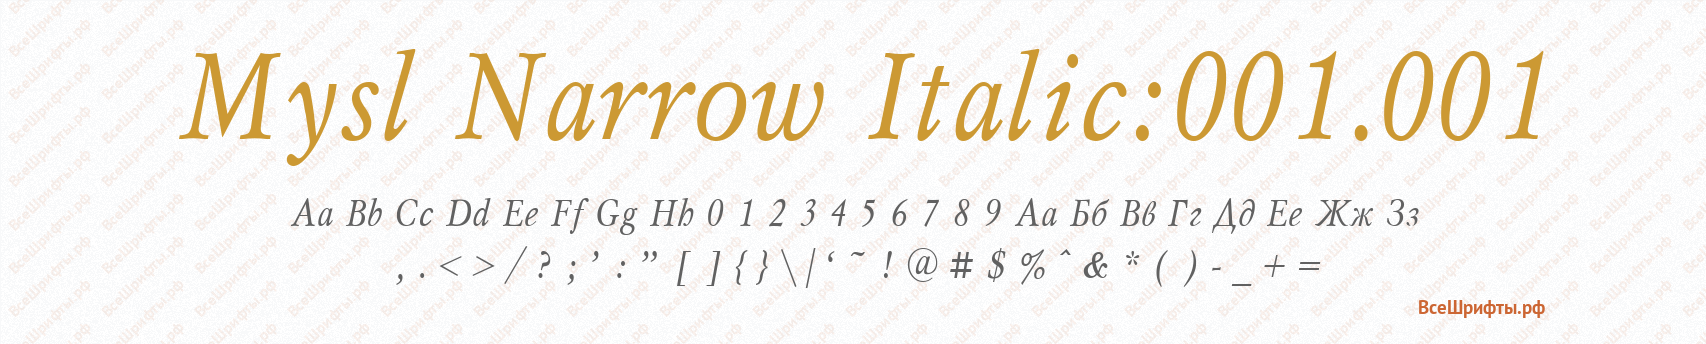 Шрифт Mysl Narrow Italic:001.001